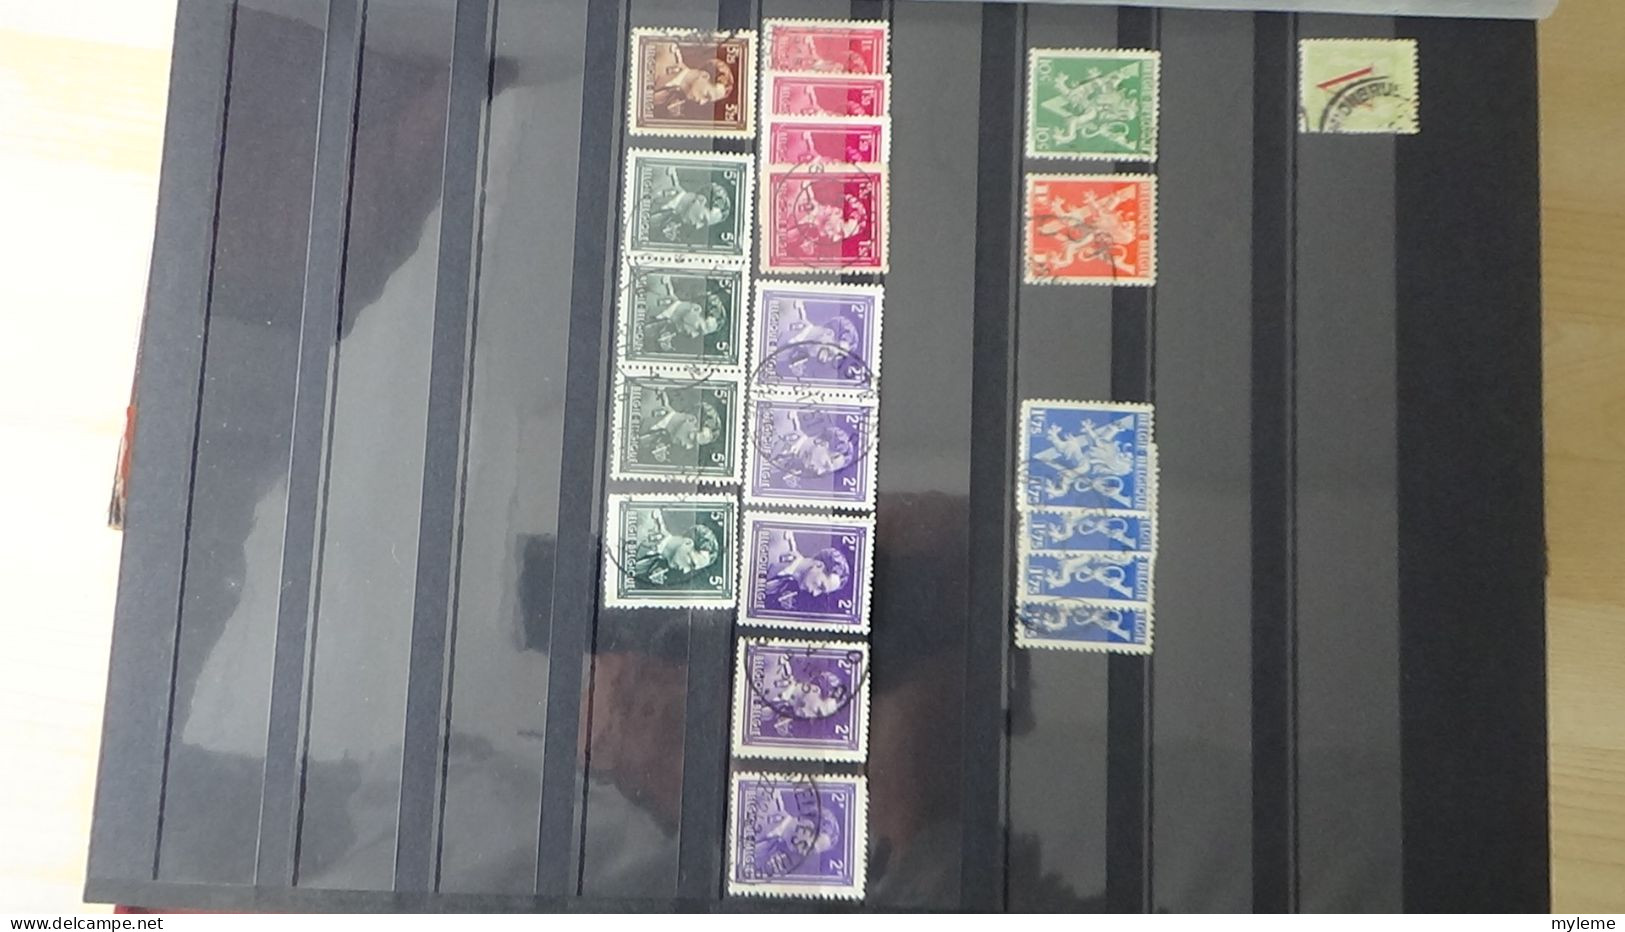 BF46 Bel ensemble de timbres de divers pays dont N° 154 ** (1 adhérence) voir scan. Cote 1900 euros